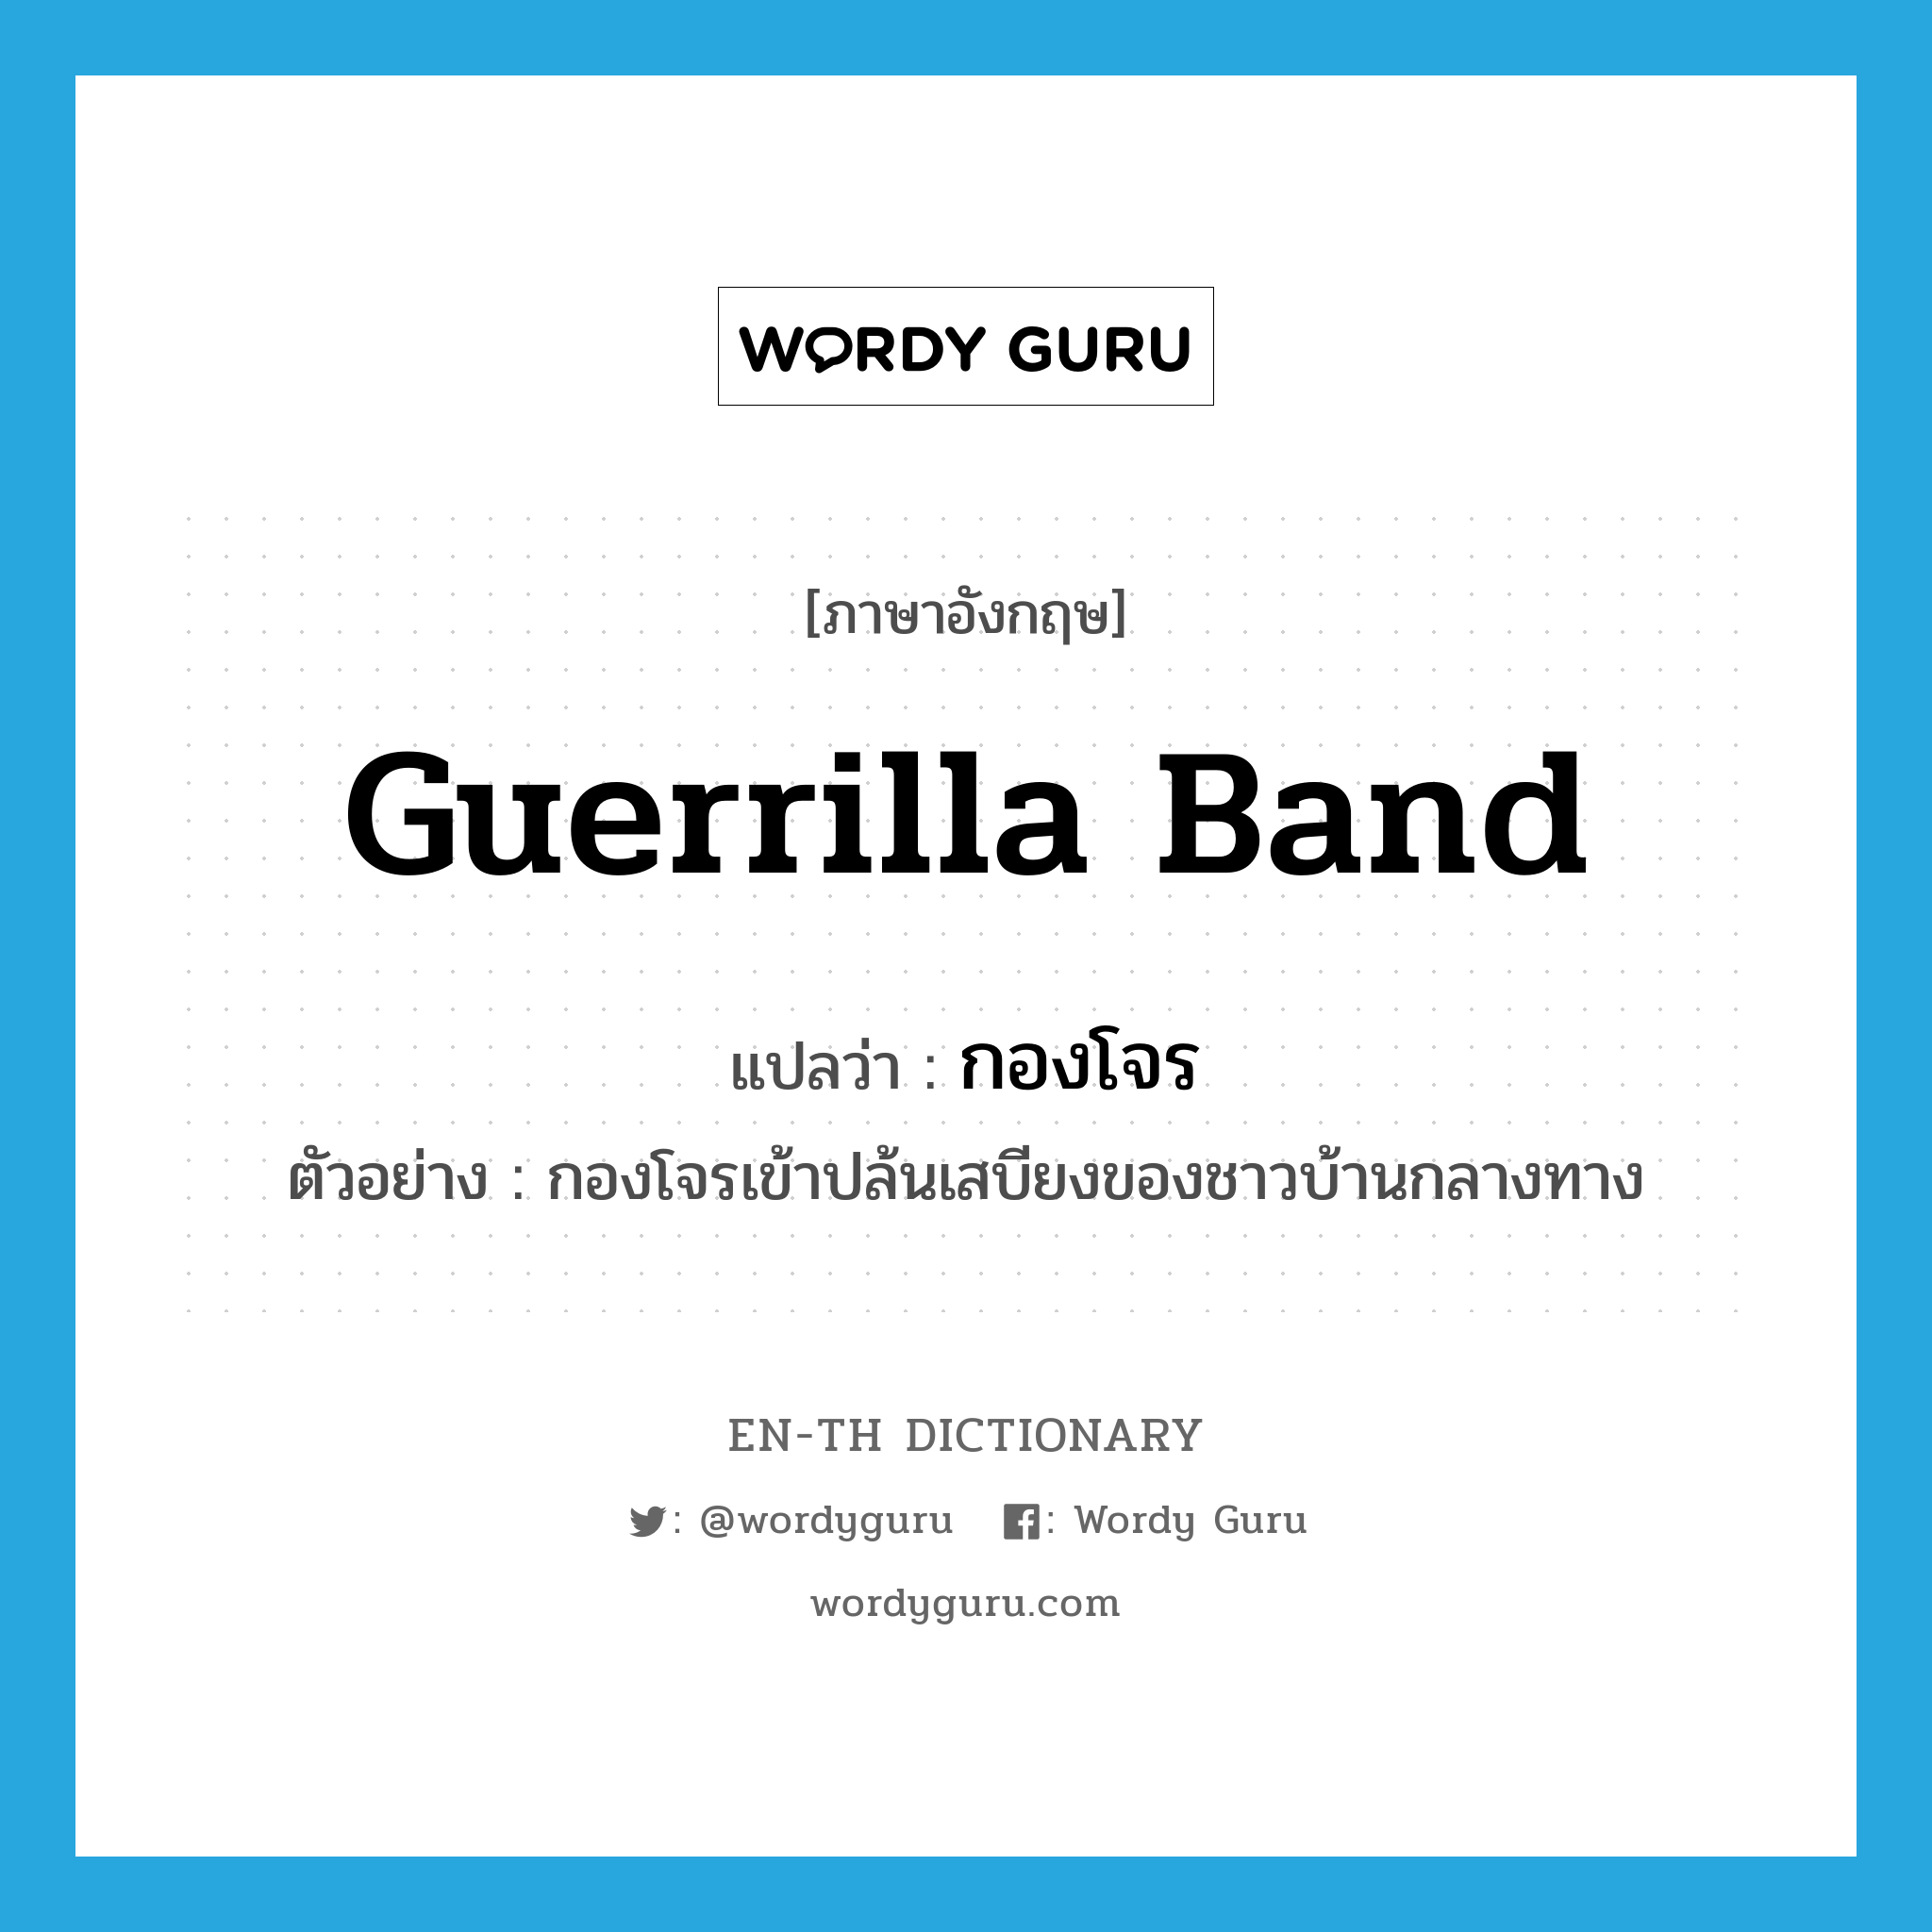 guerrilla band แปลว่า?, คำศัพท์ภาษาอังกฤษ guerrilla band แปลว่า กองโจร ประเภท N ตัวอย่าง กองโจรเข้าปล้นเสบียงของชาวบ้านกลางทาง หมวด N